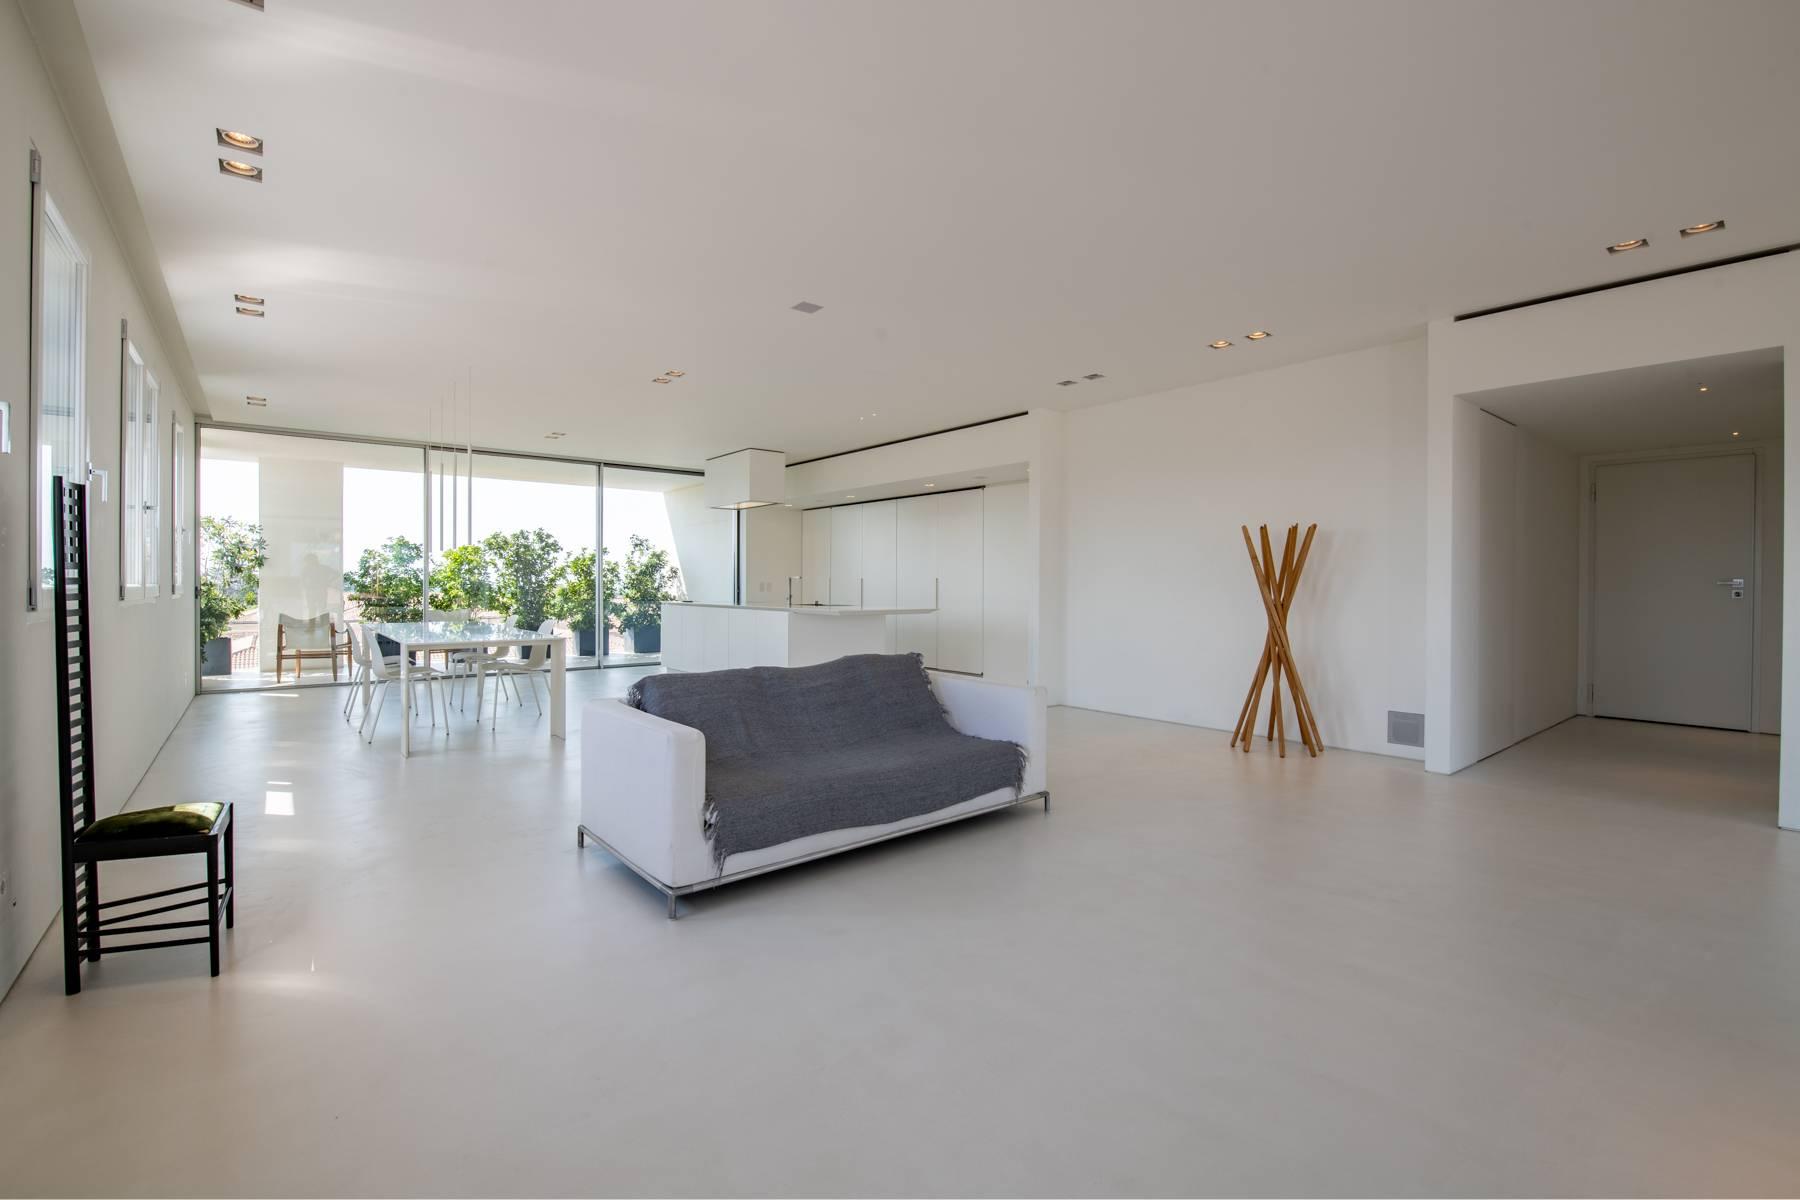 Penthouse élégant panoramique et à haute efficacité énergétique avec un design moderne raffiné - 4